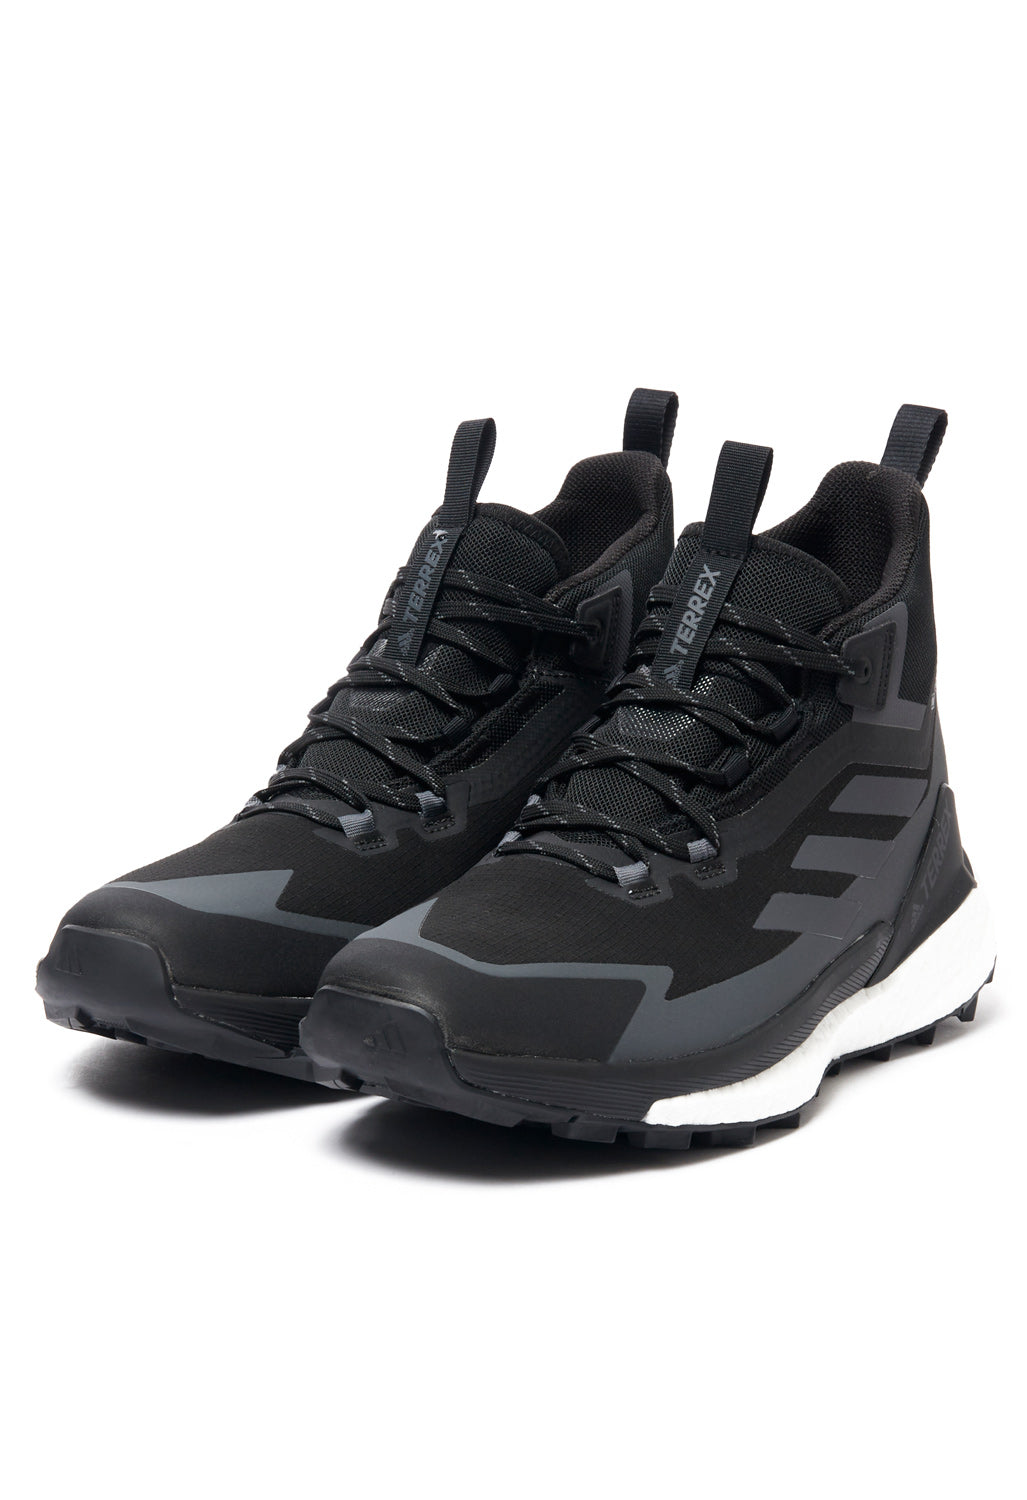 adidas TERREX Free Hiker 2 GORE-TEX Men's Boots - Core Black/Grey Six